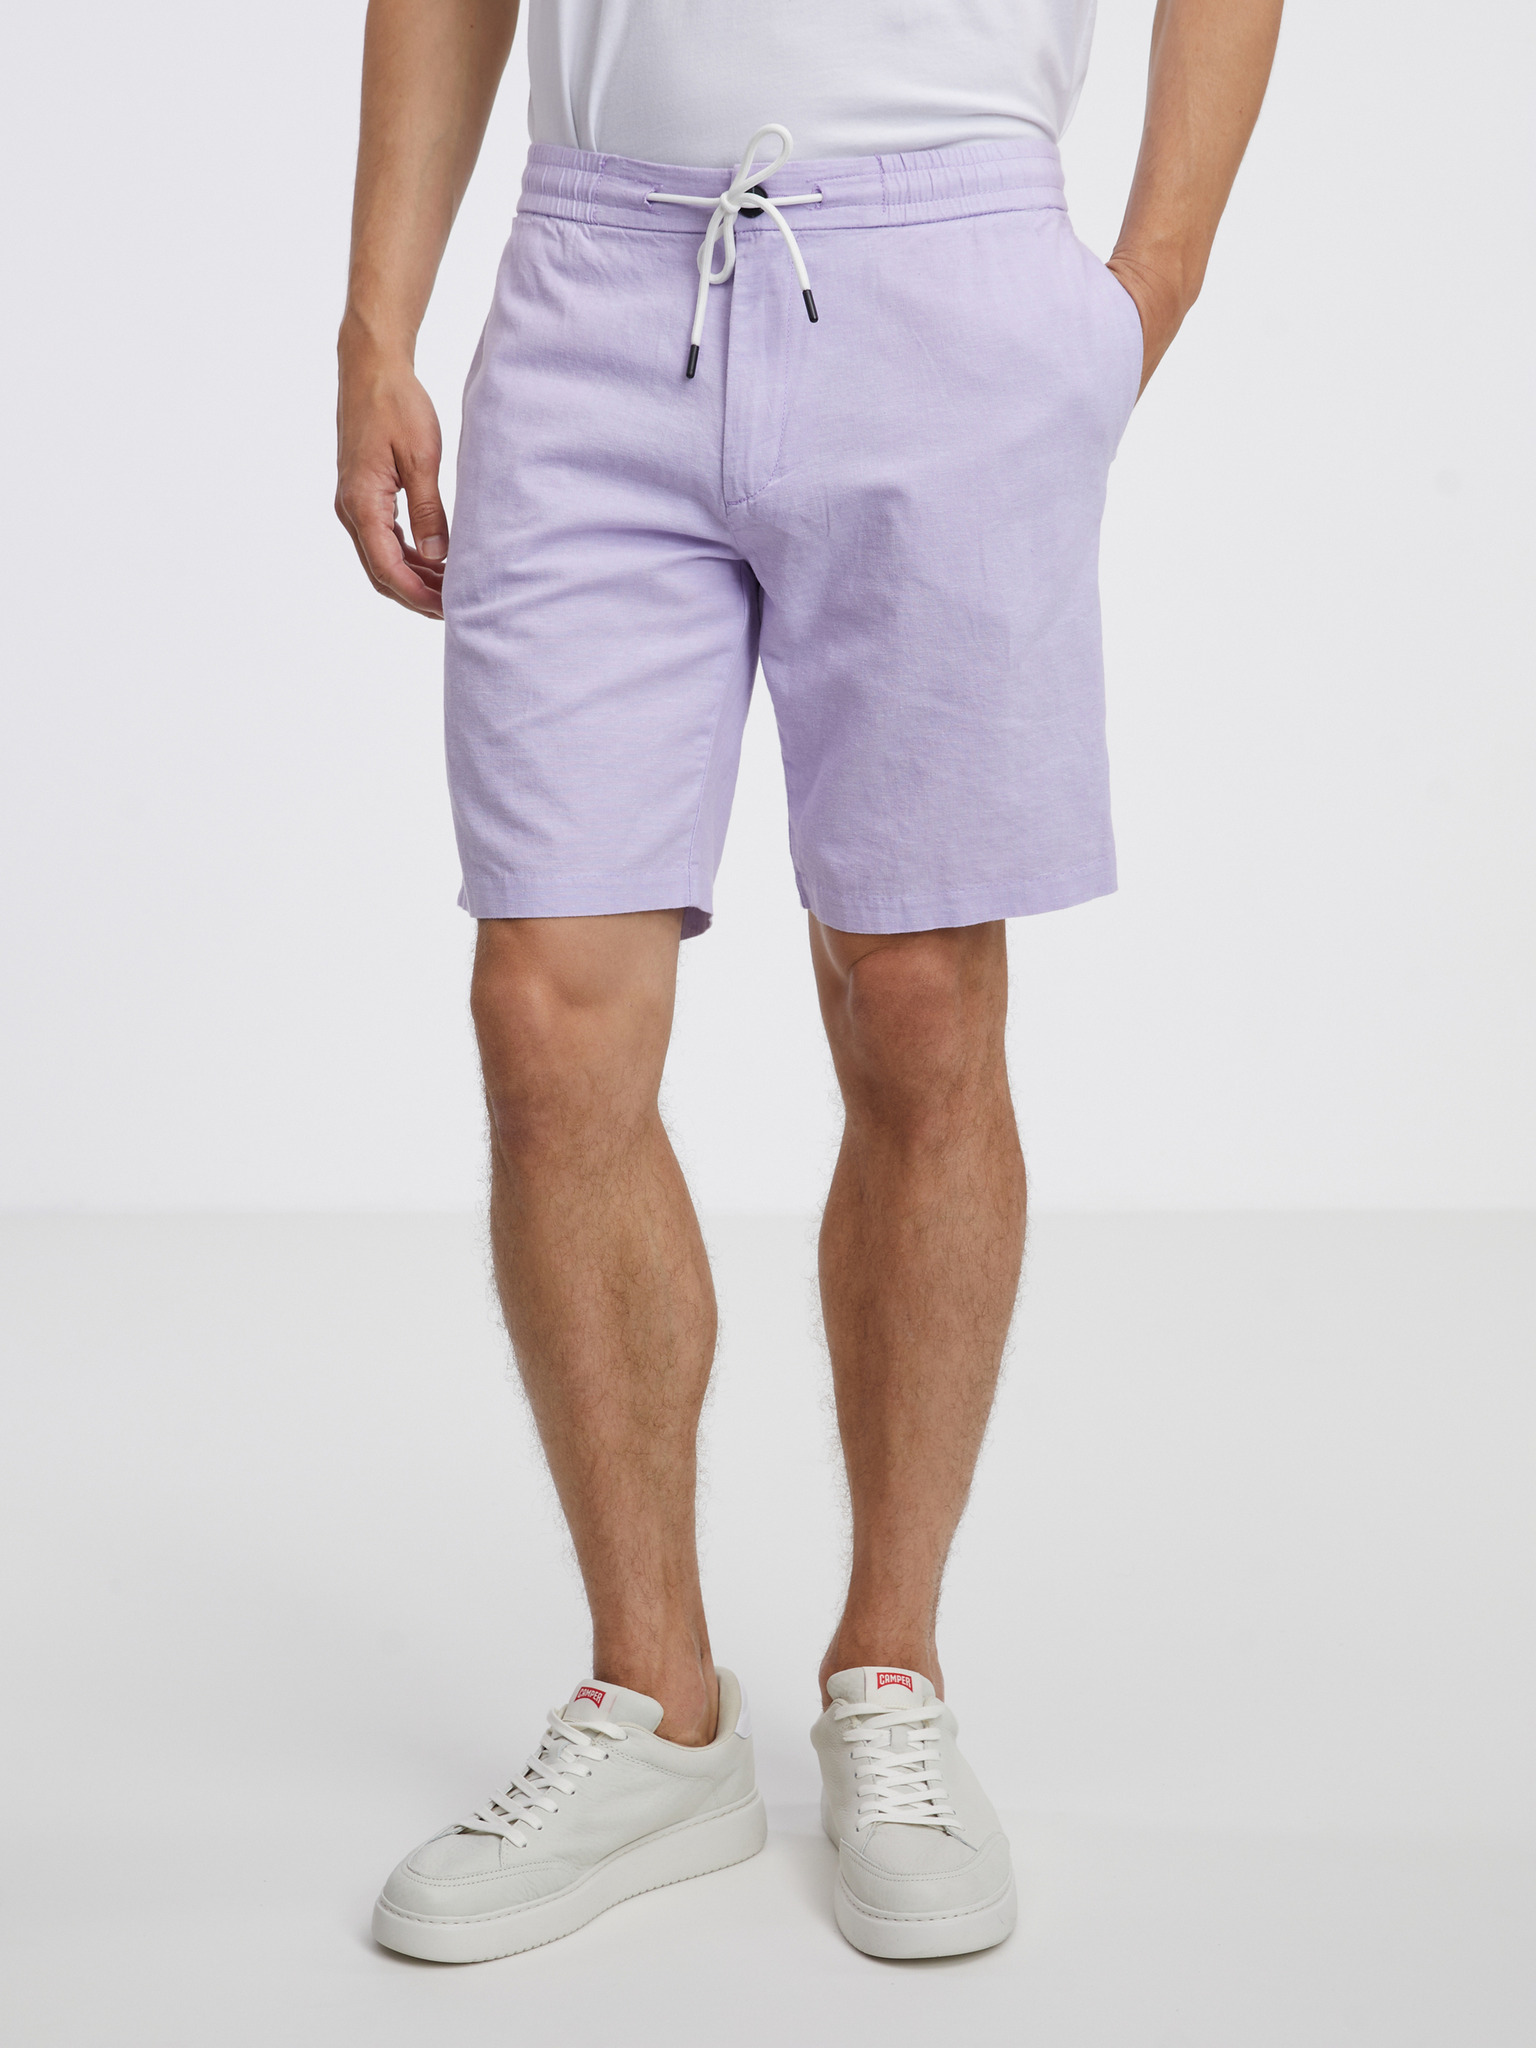 Tom Tailor Denim - Short pants | Shorts